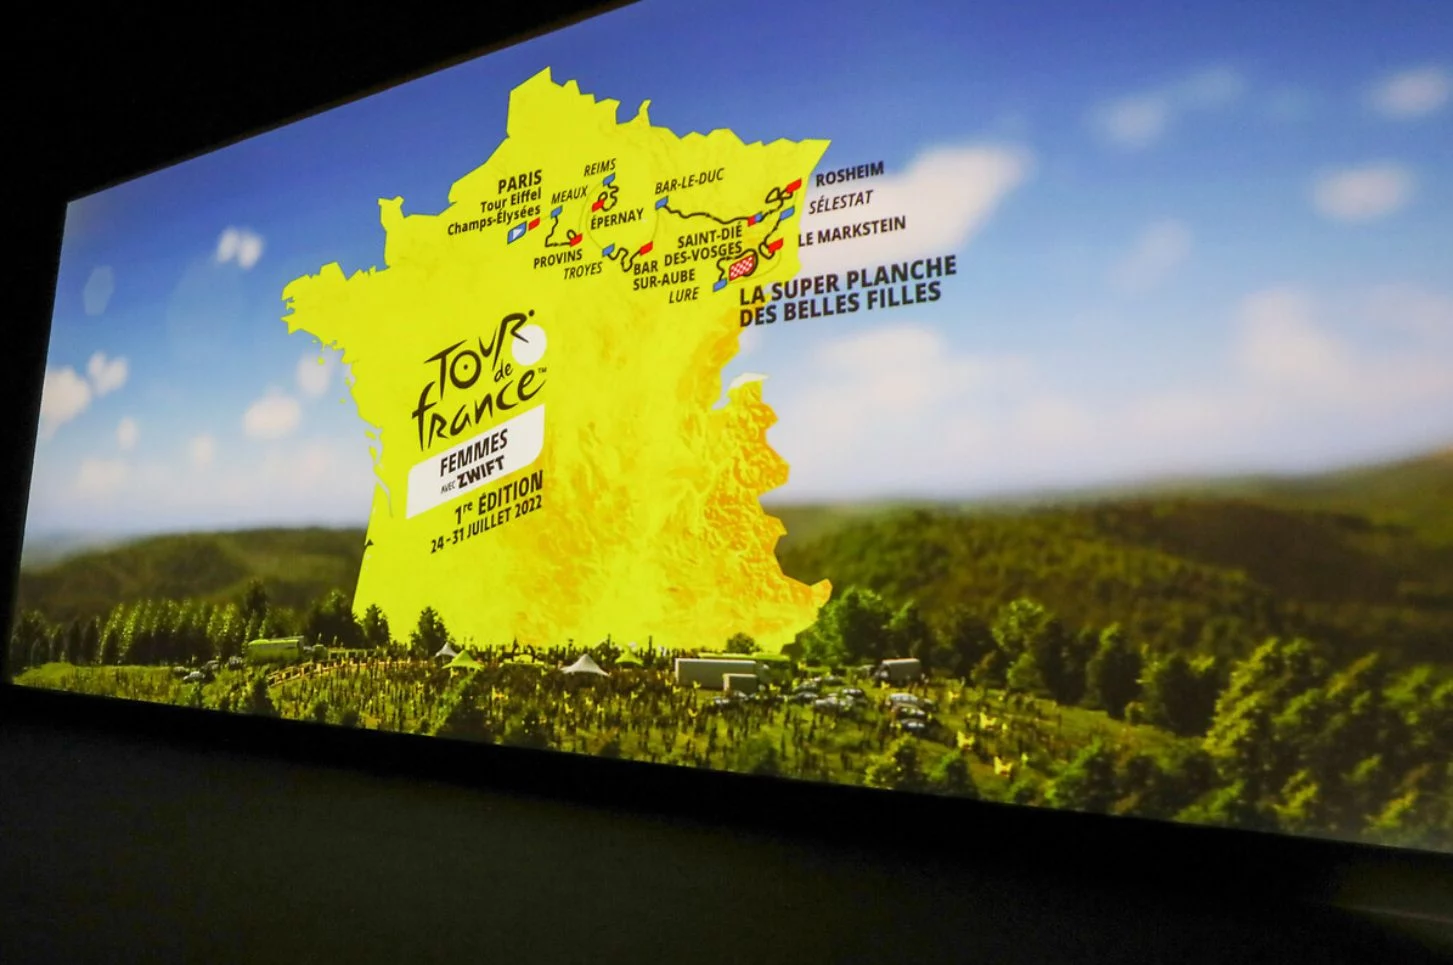 Tour de France Femmes 2022 Race Preview